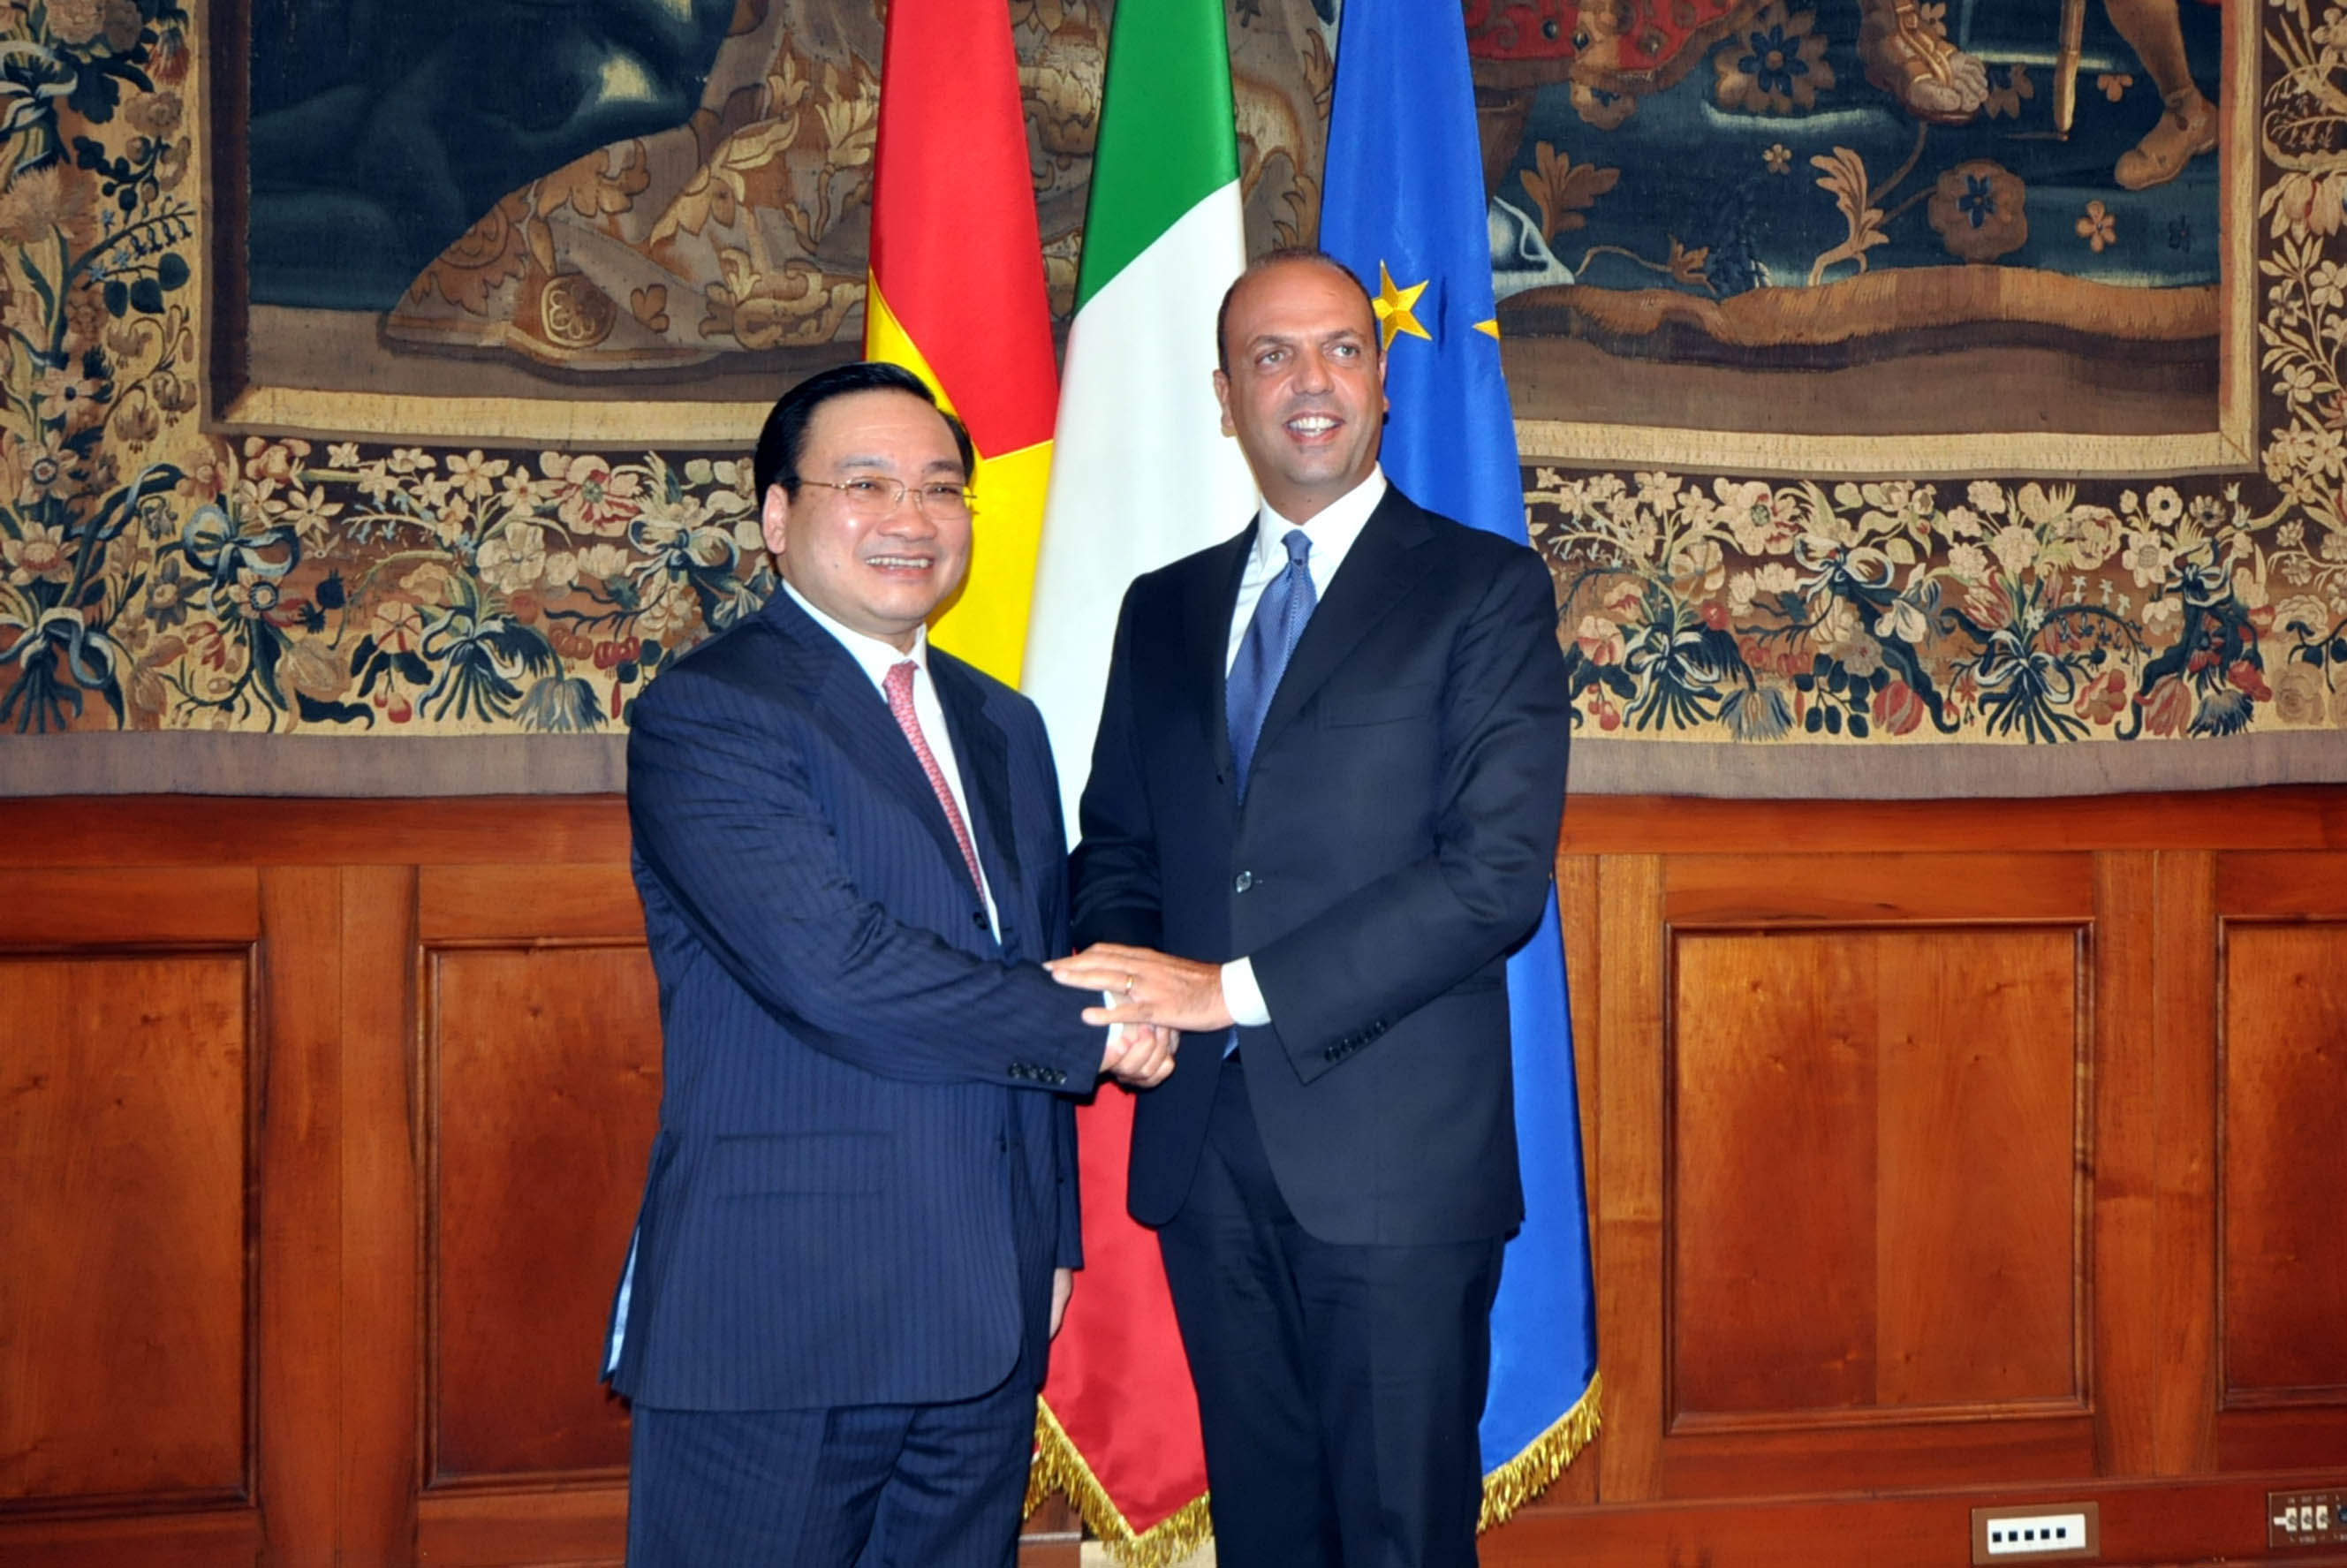 Phó Thủ tướng Hoàng Trung Hải thăm chính thức Italy